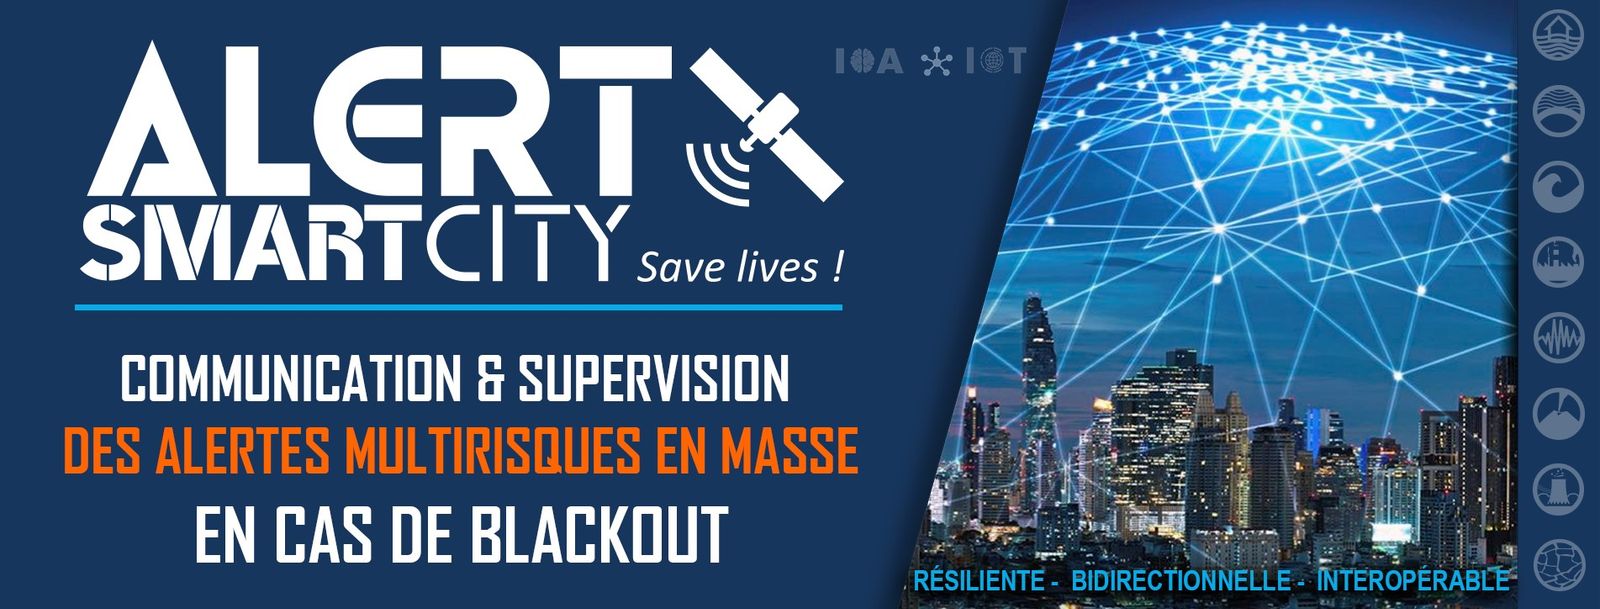 [FORMAT COURT] Solutions de communication de crise et de supervision des alertes multirisques en cas de blackout